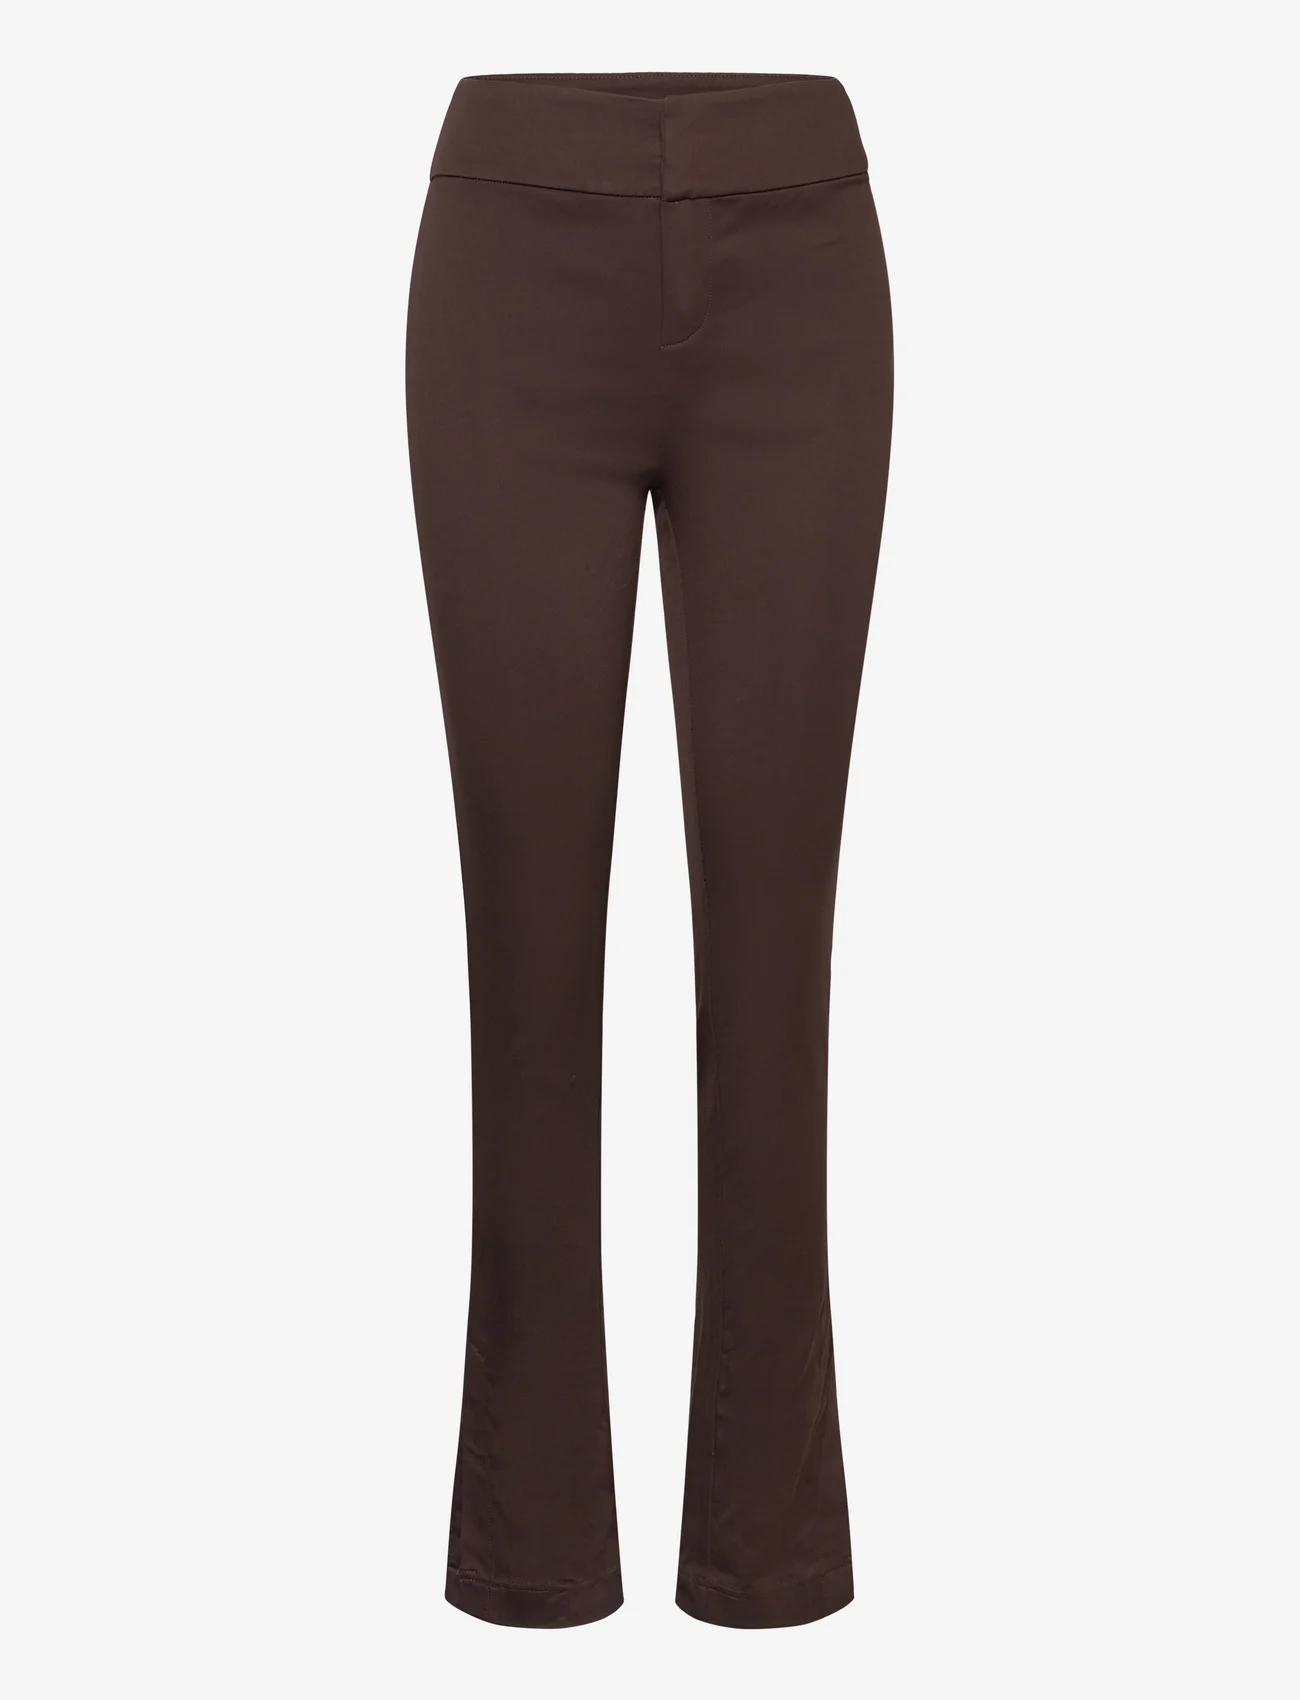 Rosemunde - Trousers w/ slit - slim-fit broeken - black brown - 0